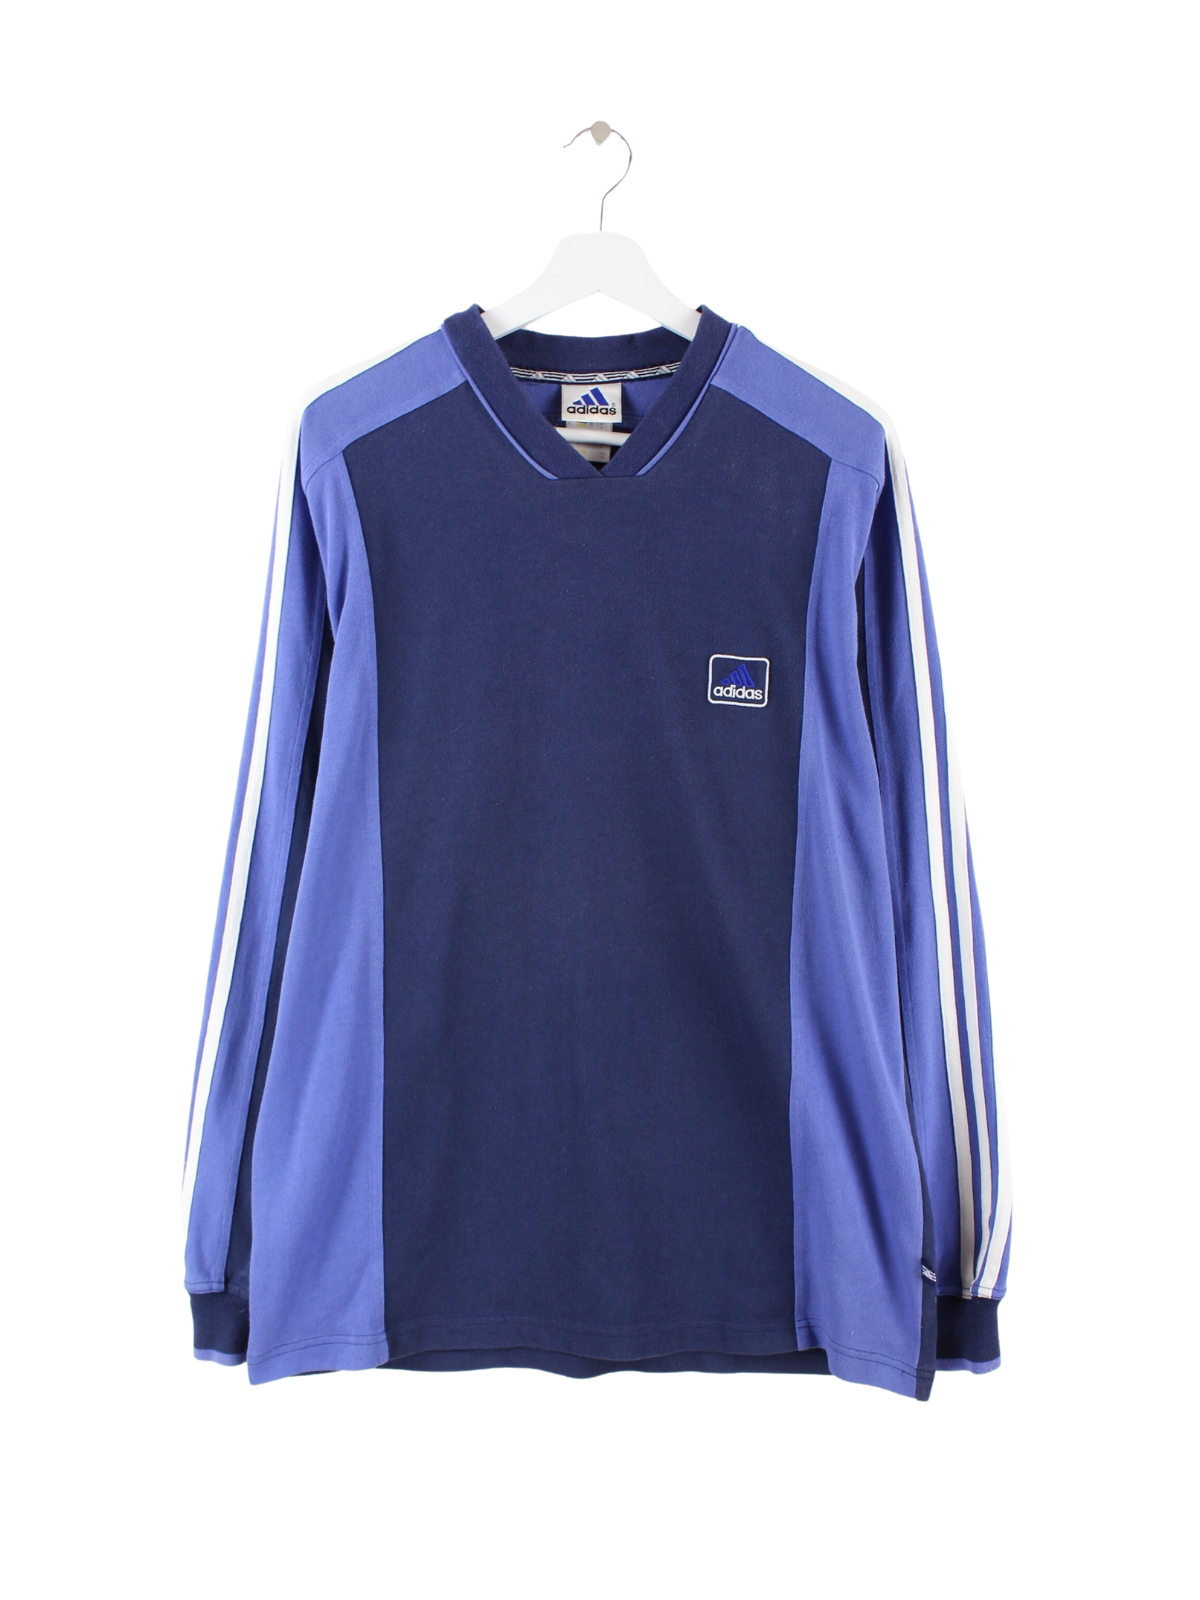 Adidas 90s Sweatshirt Blue XL